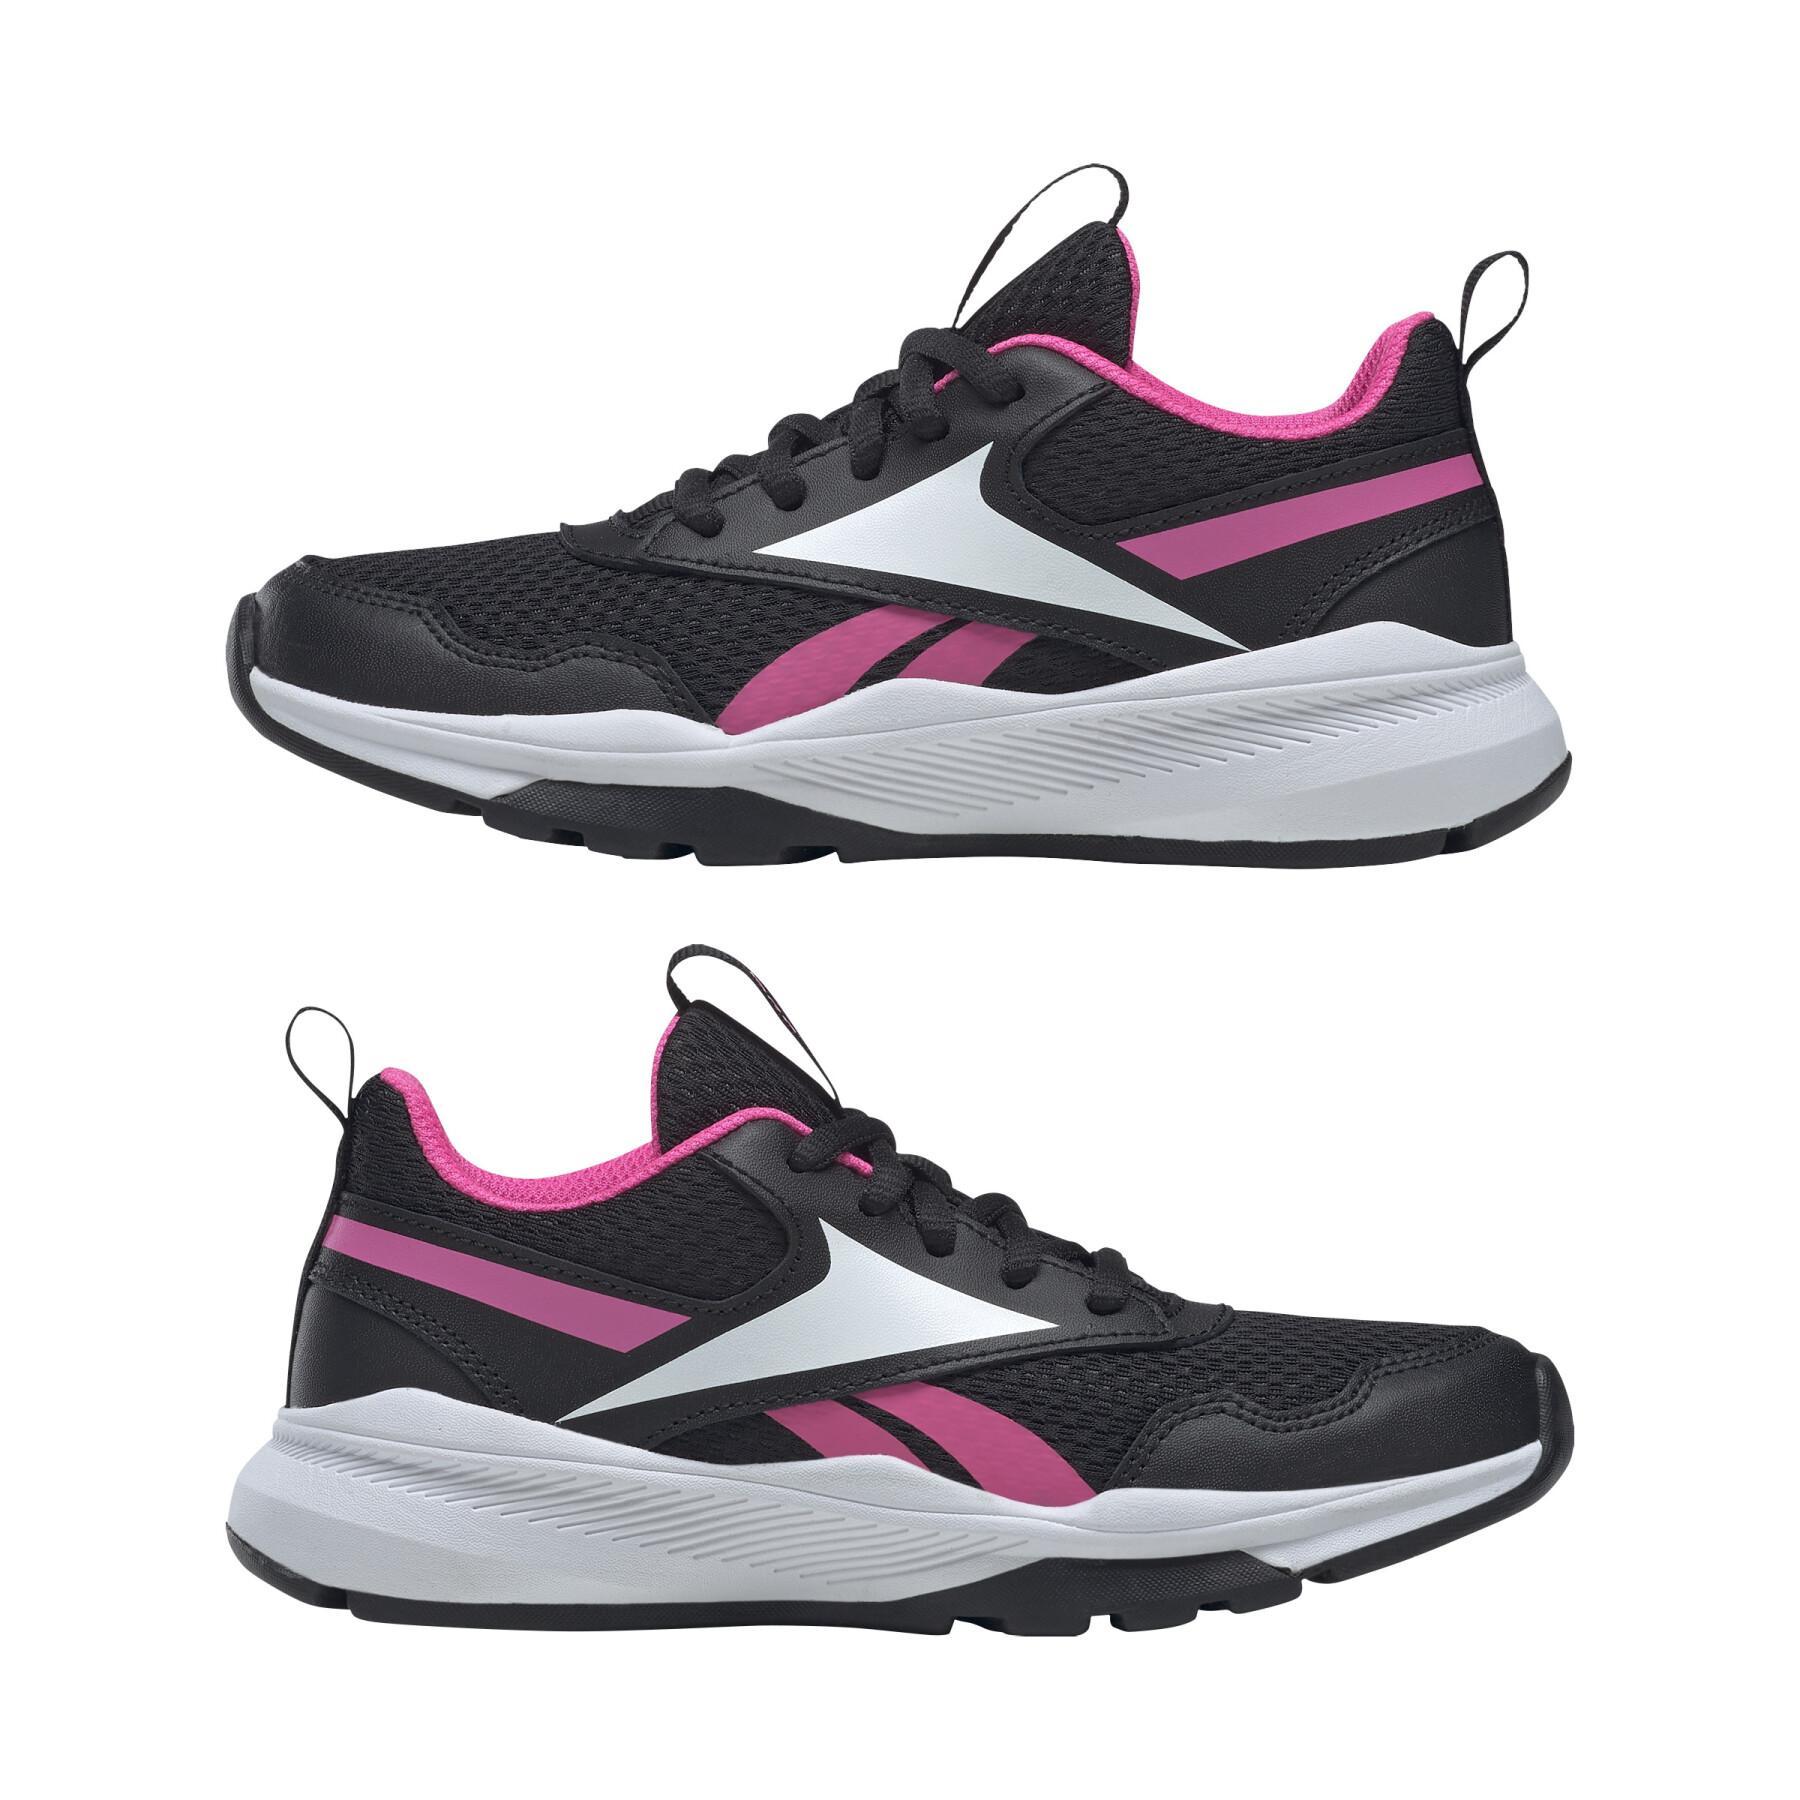 Zapatillas de deporte para niñas Reebok Xt Sprinter 2